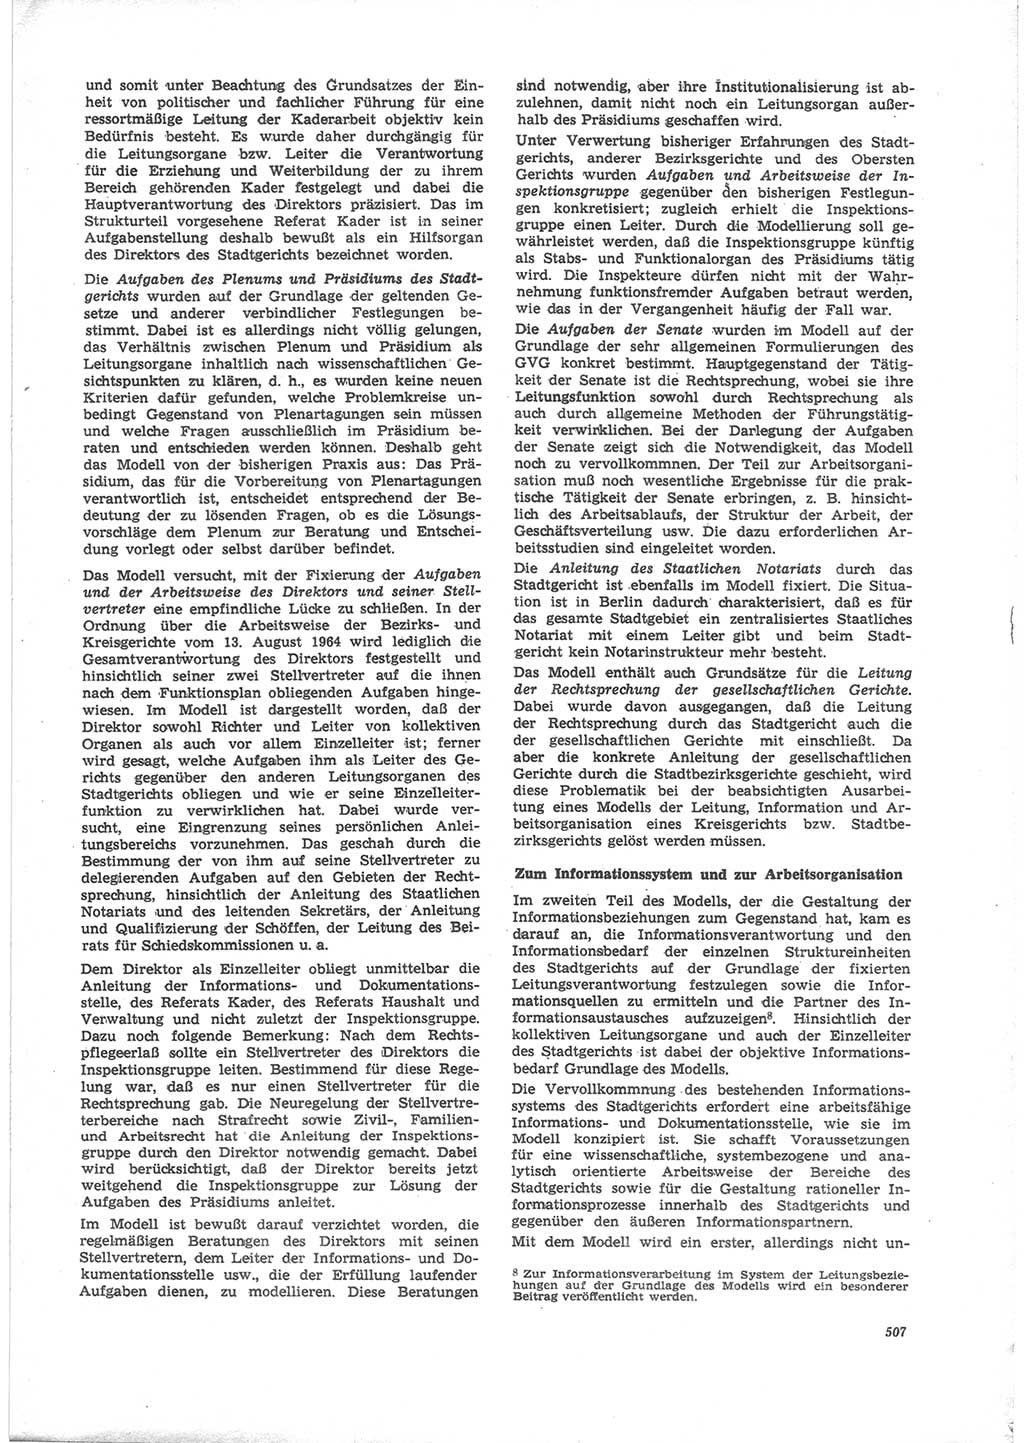 Neue Justiz (NJ), Zeitschrift für Recht und Rechtswissenschaft [Deutsche Demokratische Republik (DDR)], 24. Jahrgang 1970, Seite 507 (NJ DDR 1970, S. 507)